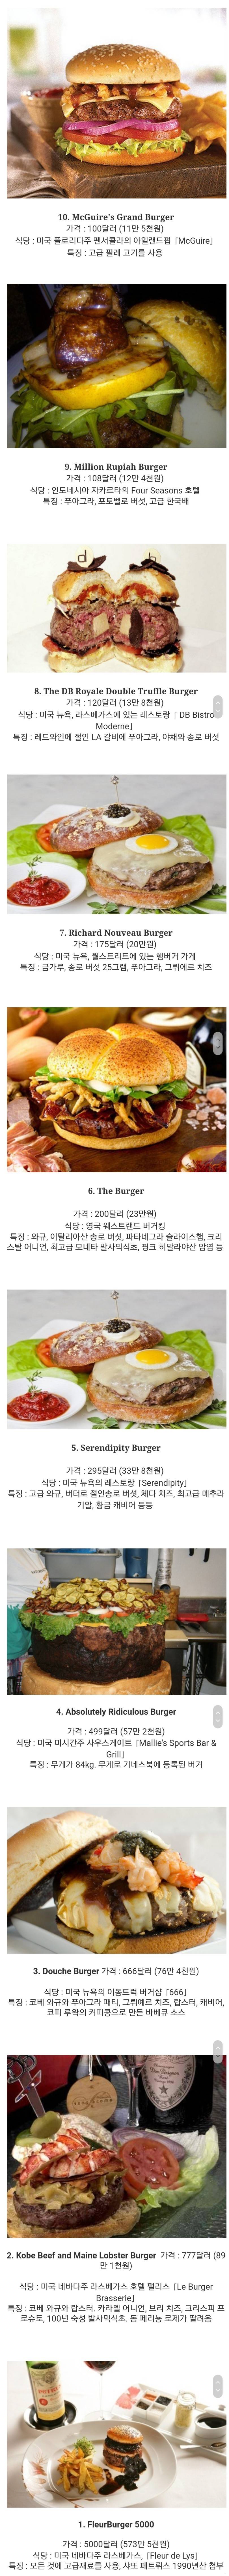 세계에서 가장 비싼 햄버거.jpg